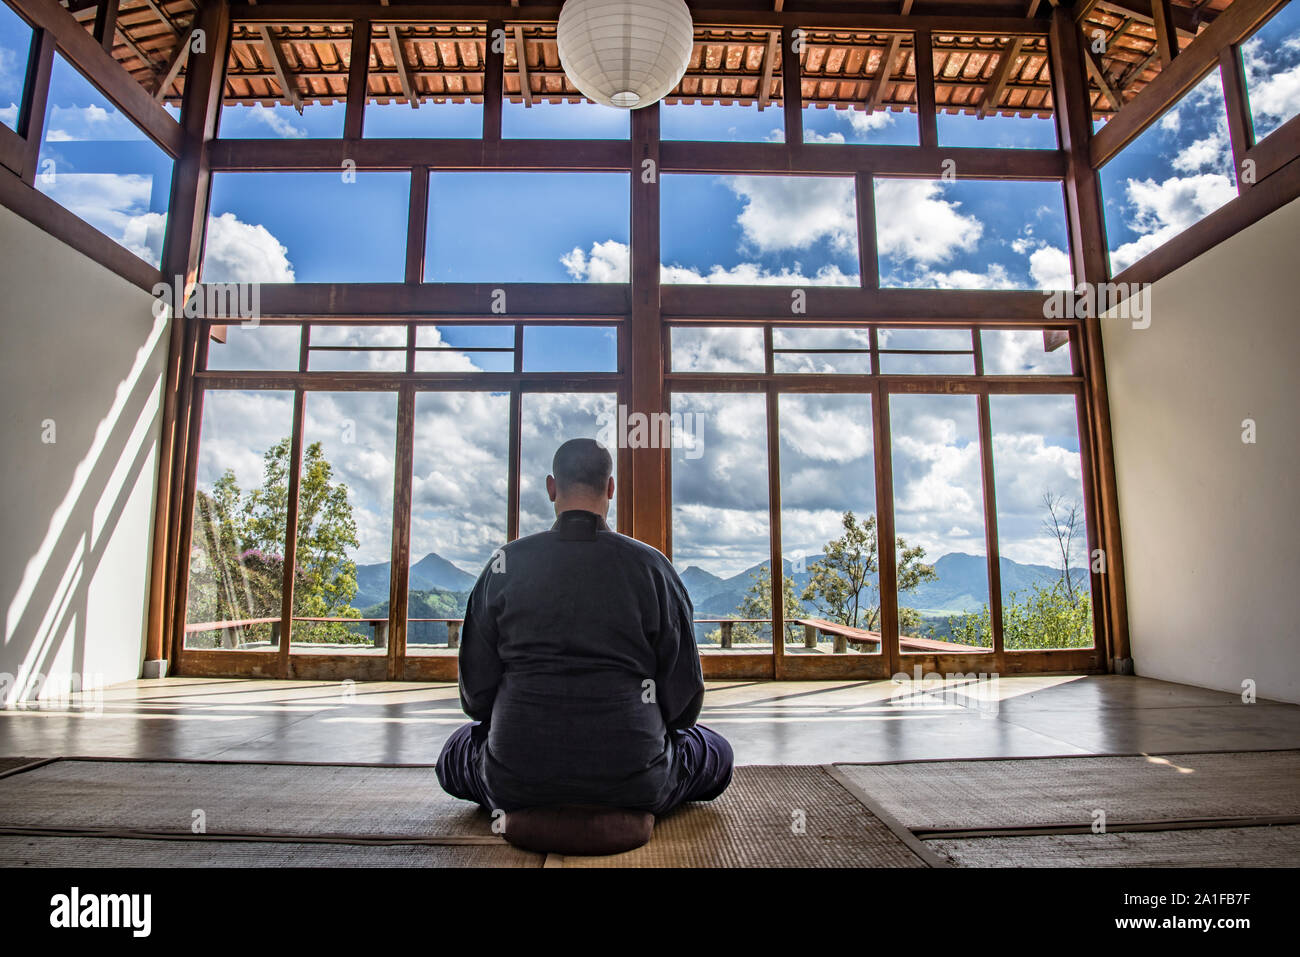 Mönch Meditation in einem japanischen Haus in den Bergen Stockfoto